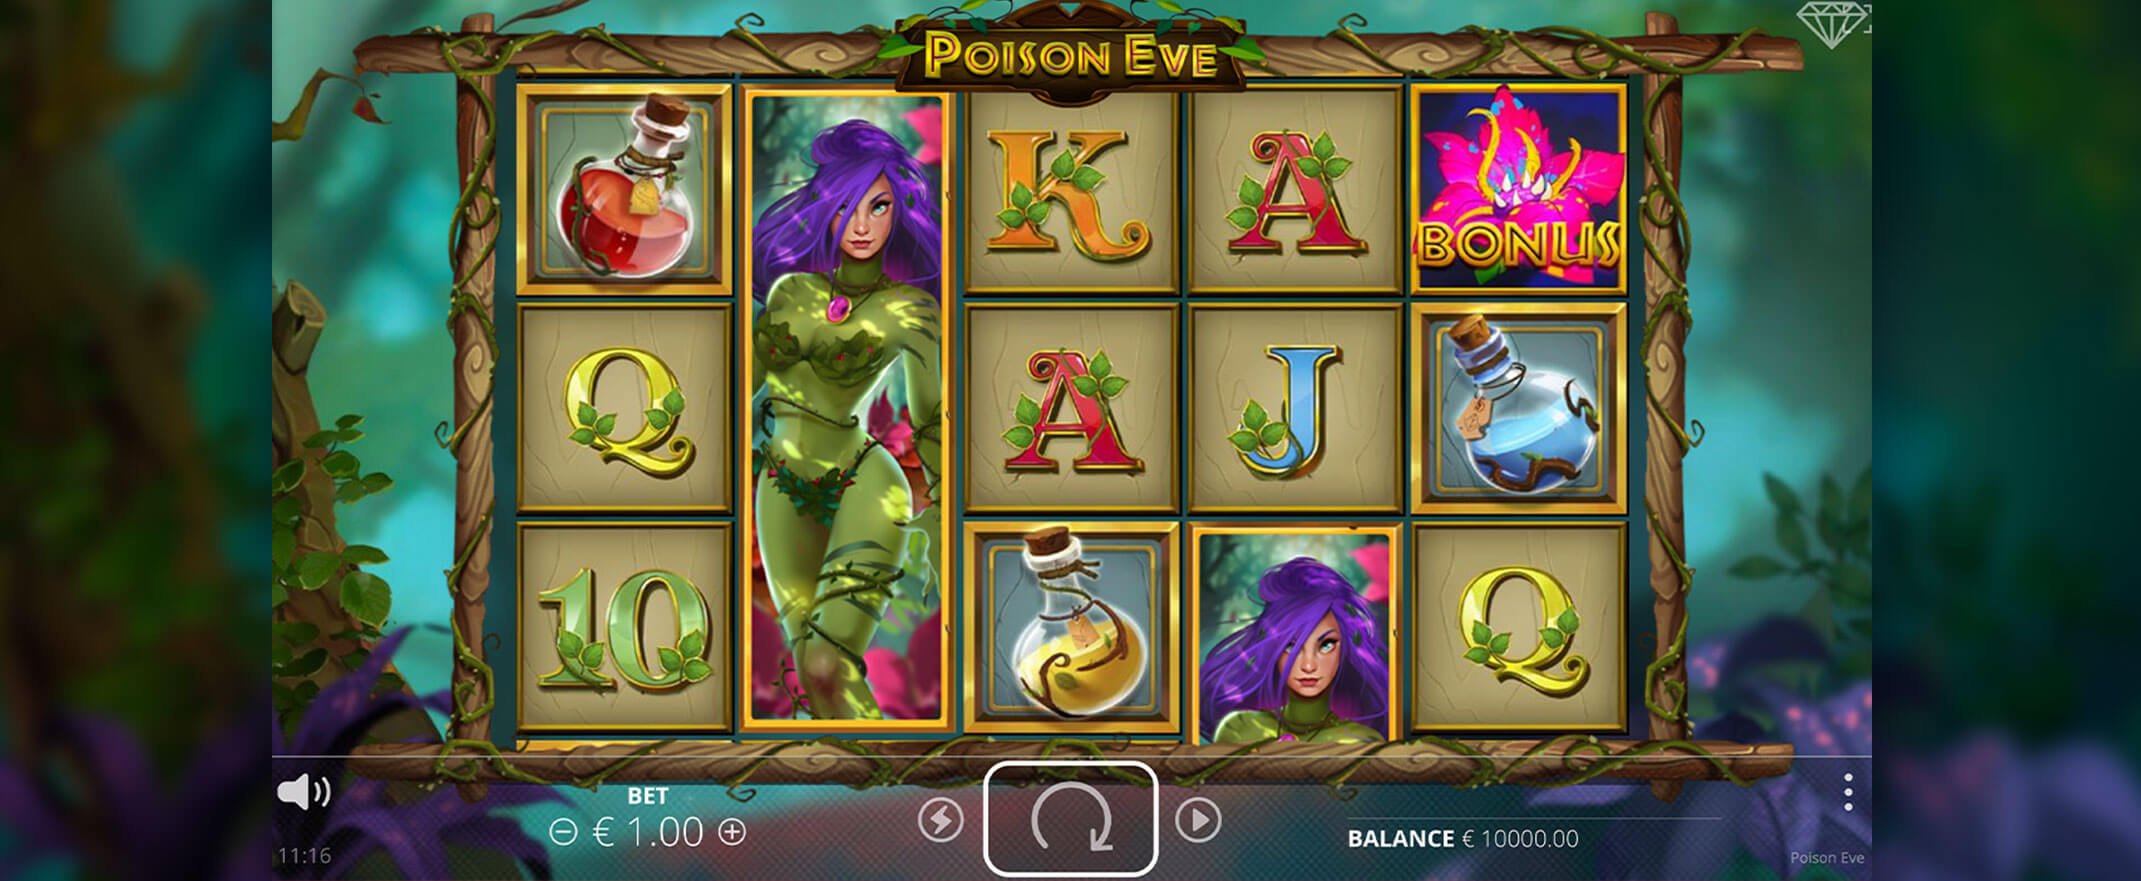 Poison Eve Spielautomaten spielen